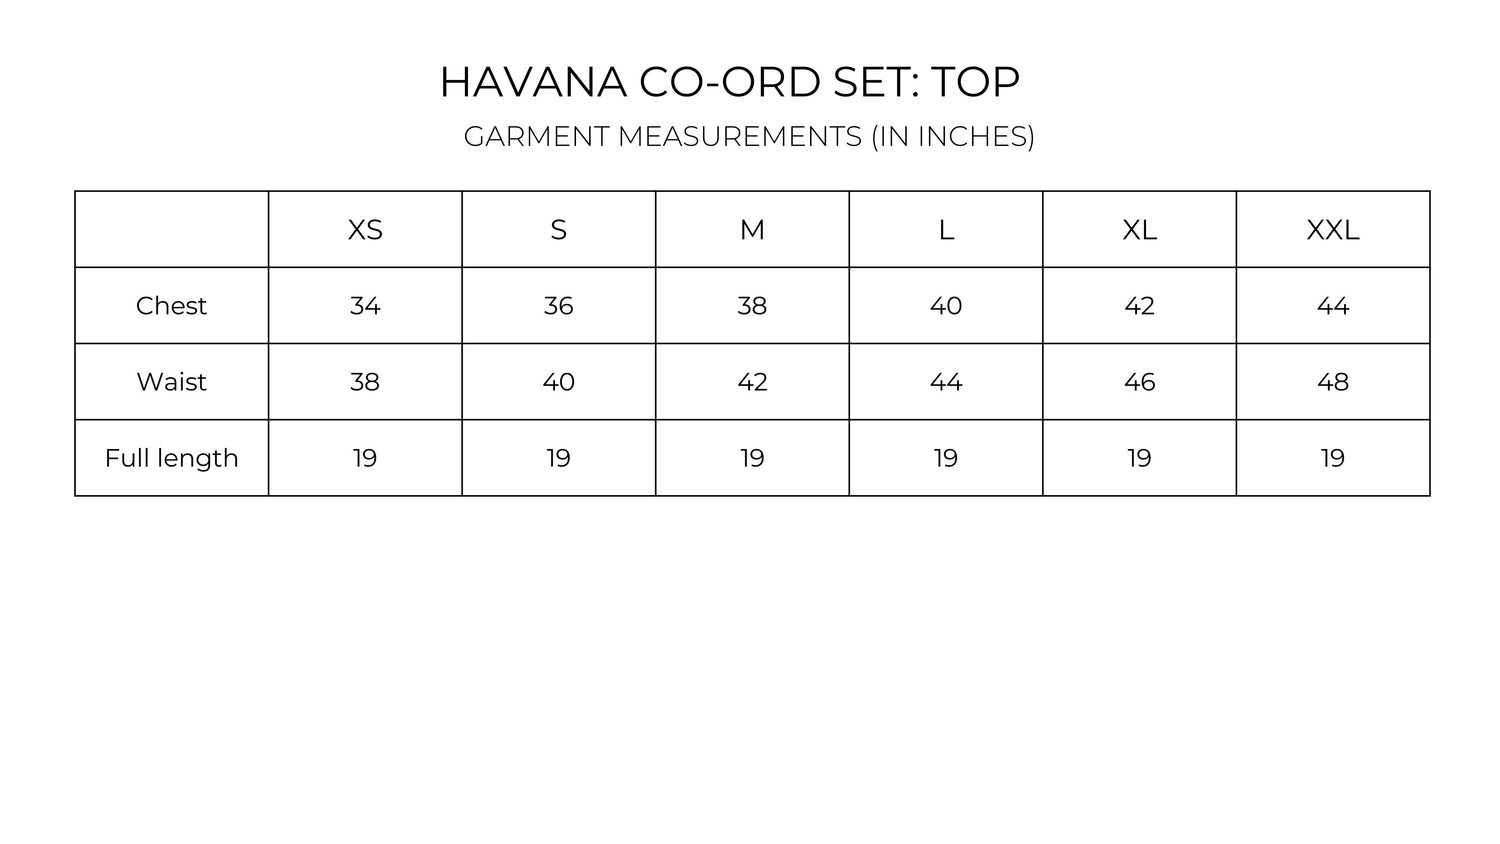 Havana Co-ord Set